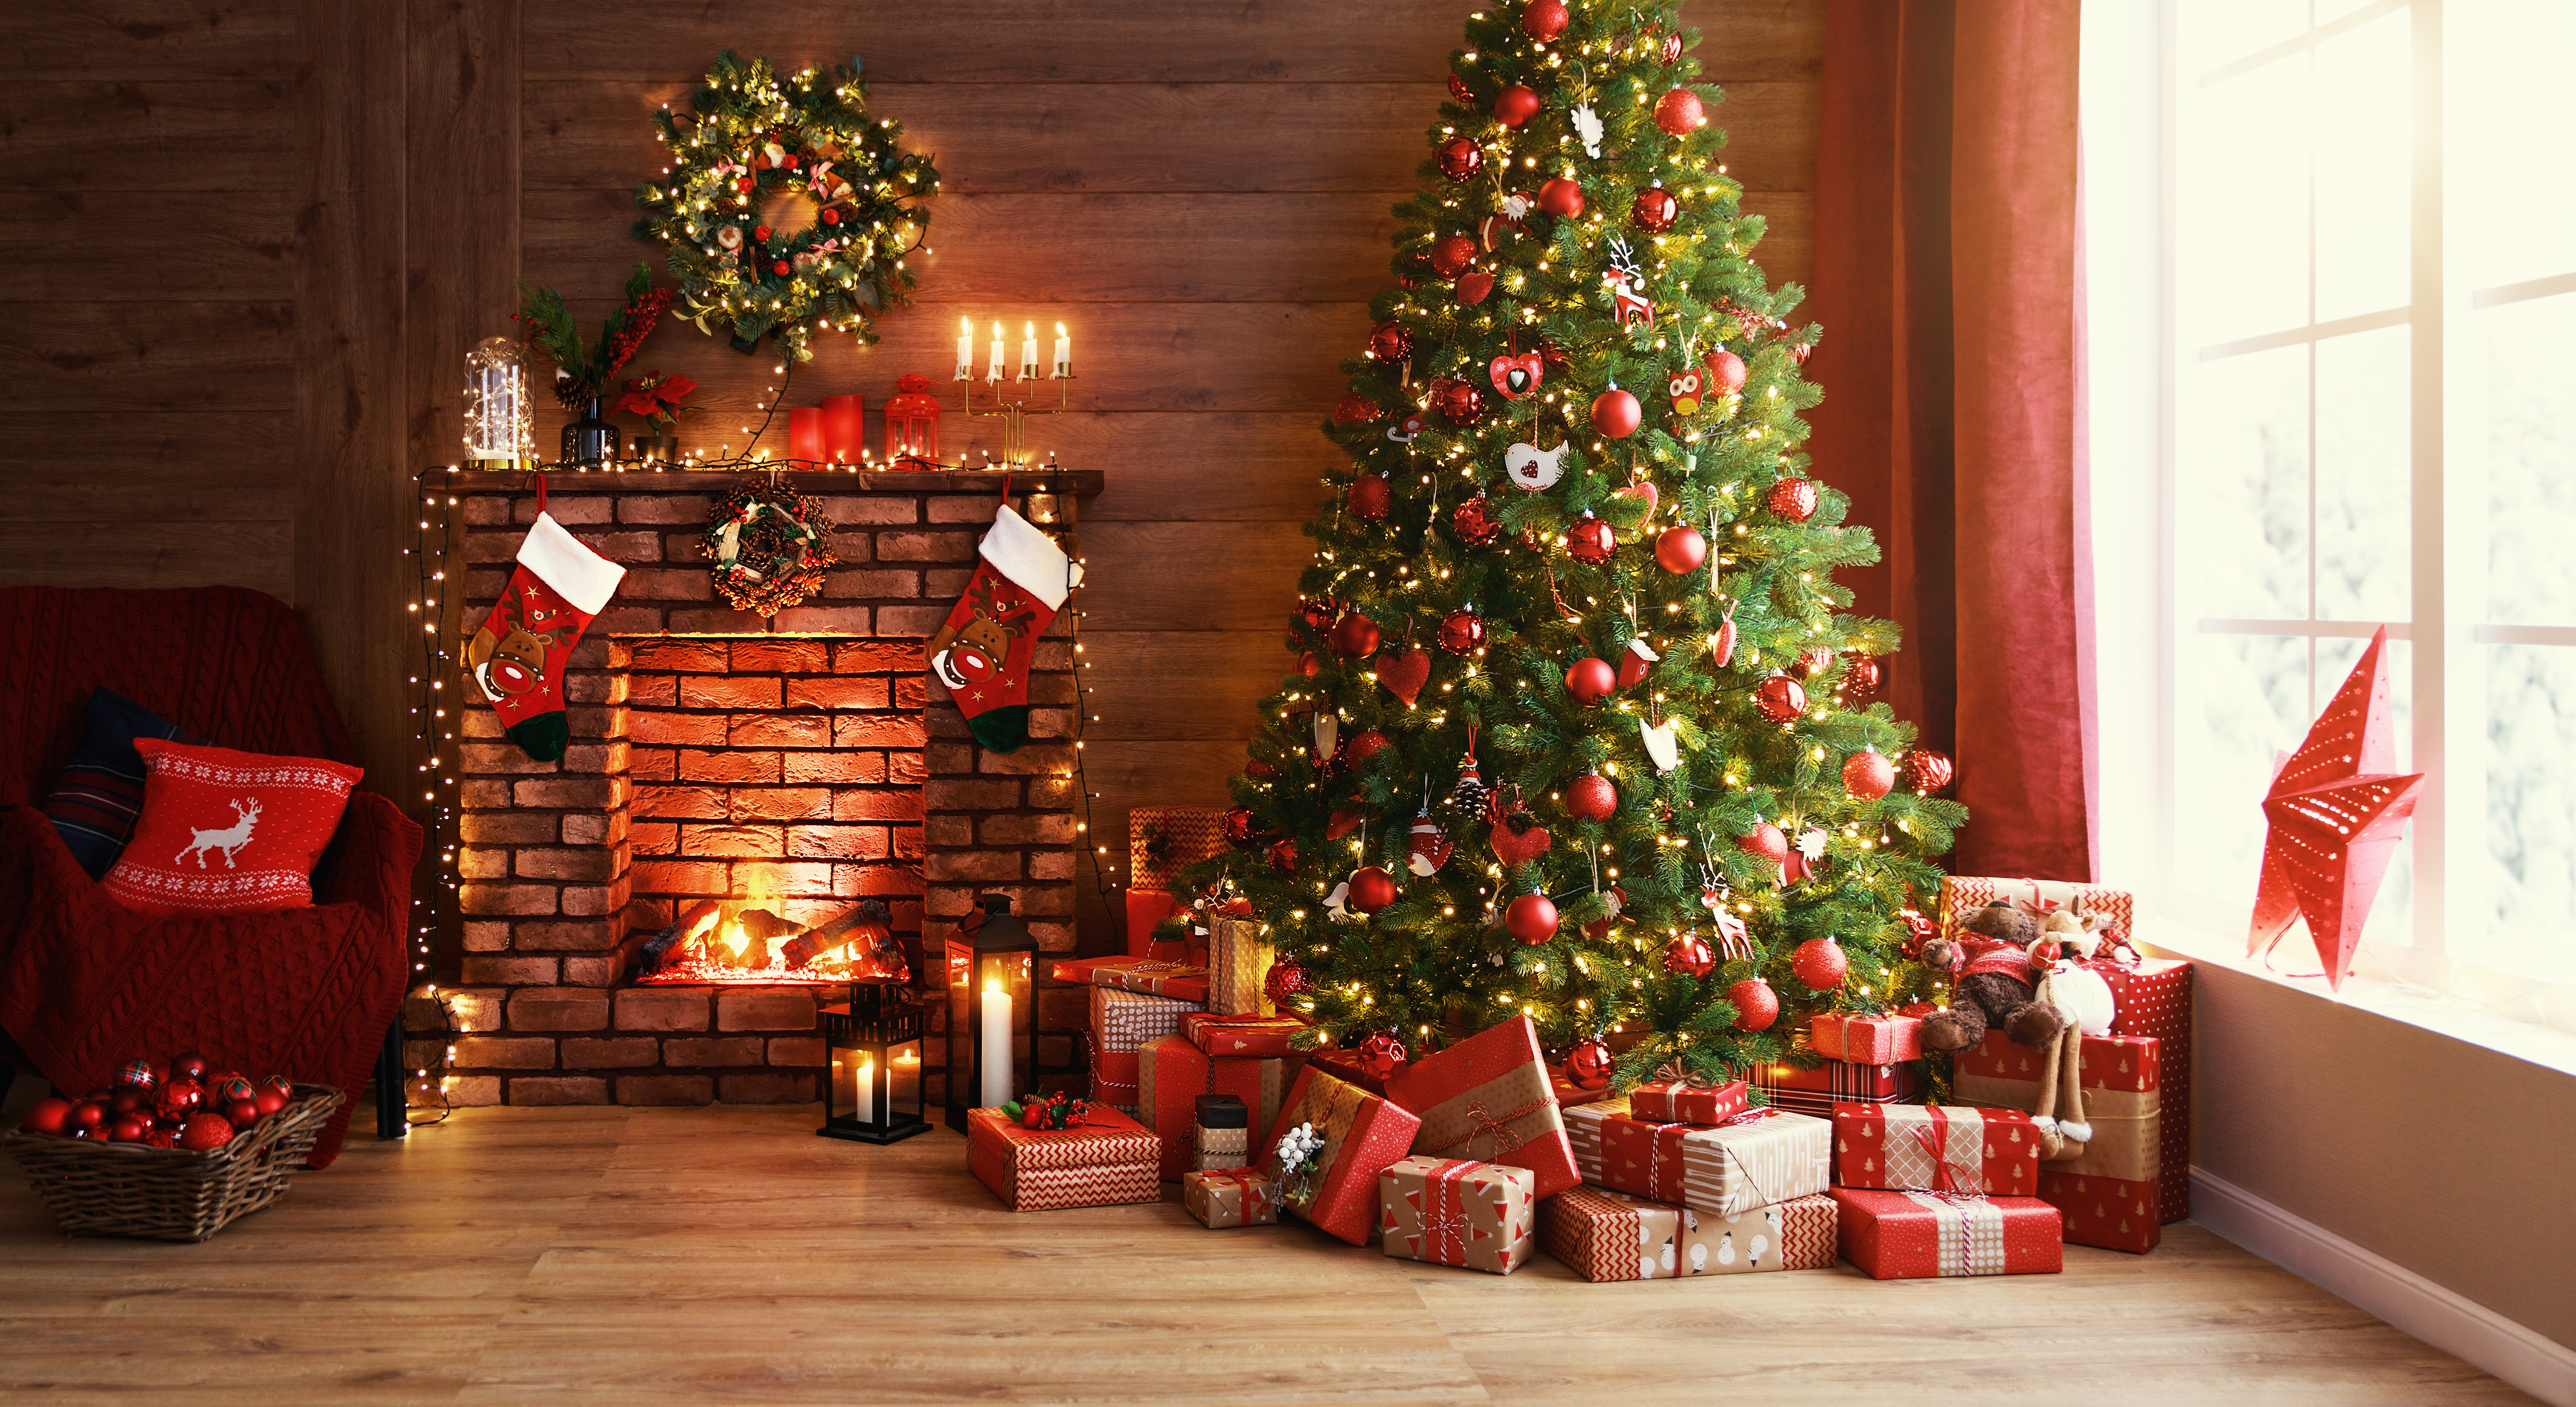 Cajas de regalo bajo un árbol de Navidad | Fuente: Shutterstock